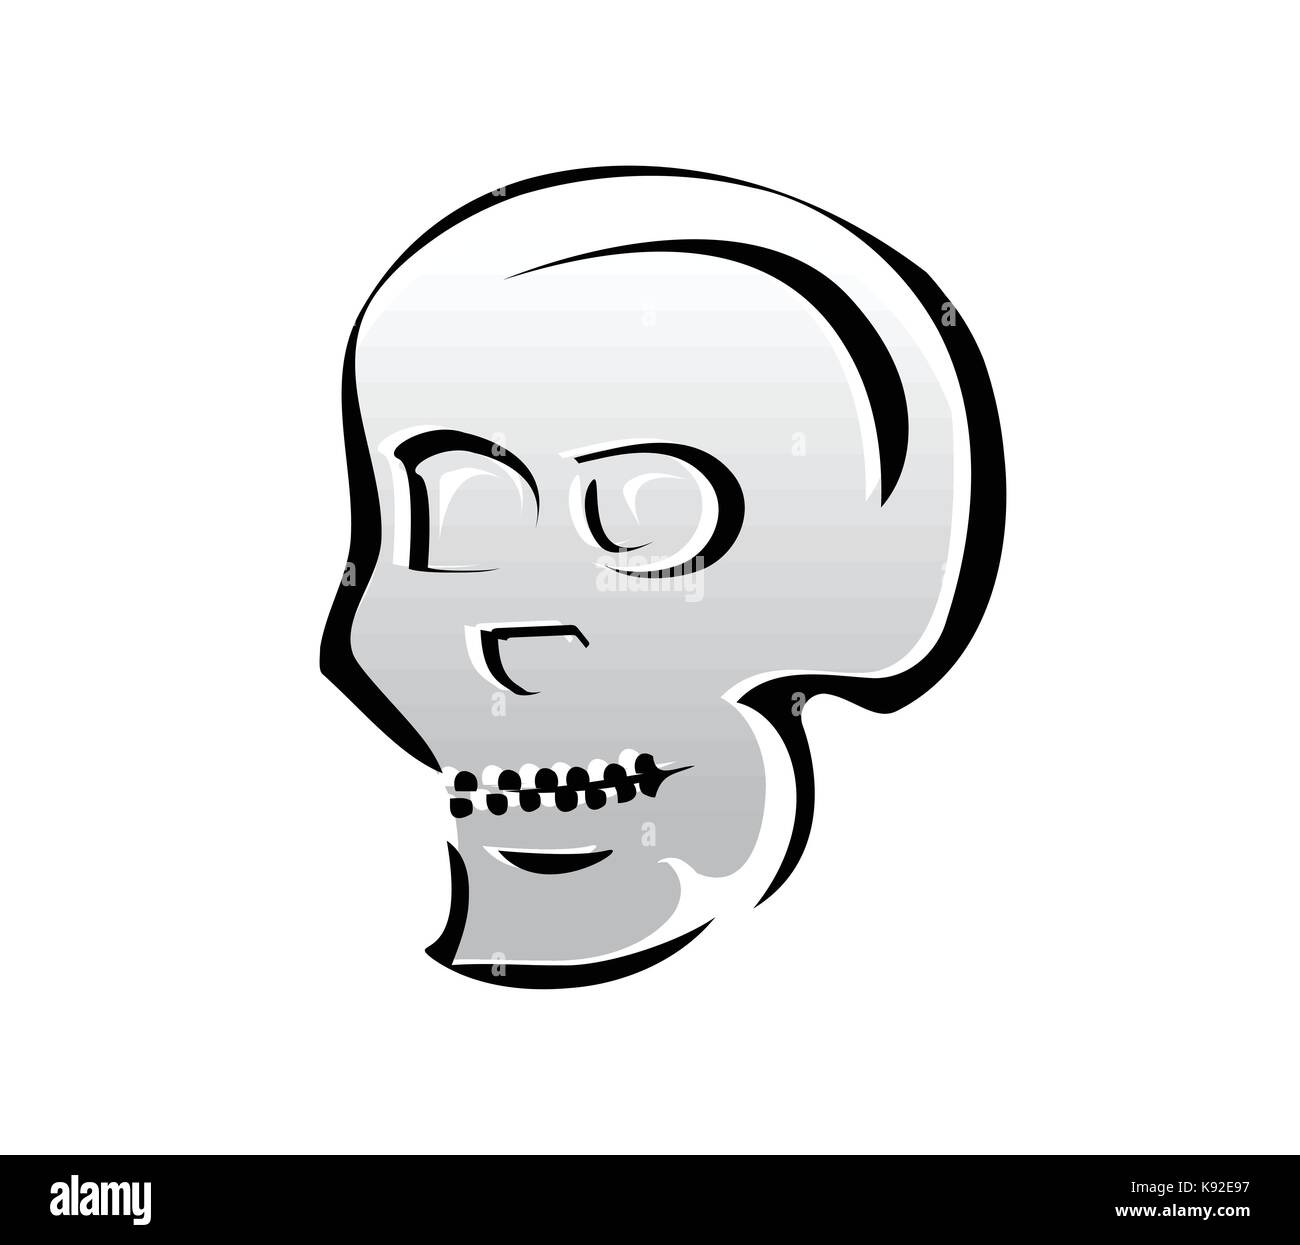 Contours de l'illustration du crâne, symbole de la conception, isolé sur fond blanc. Illustration de Vecteur